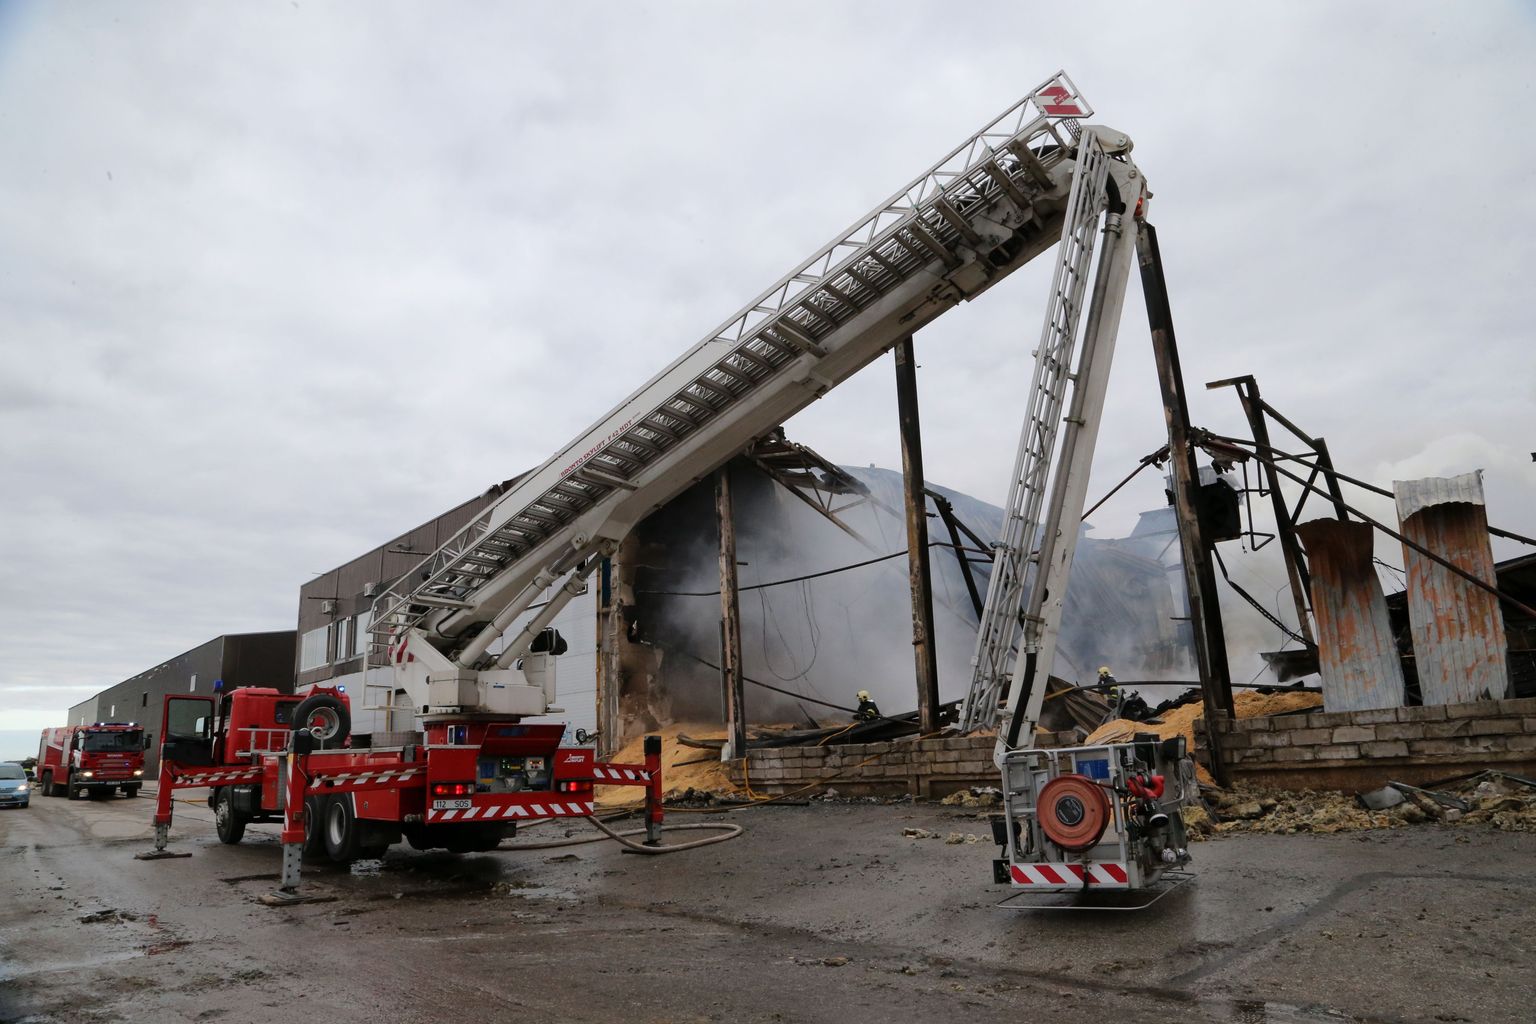 Tartu vallas Tila külas asuva puidutööstuse põlengu kustutamine jätkus veel eile hommikul.